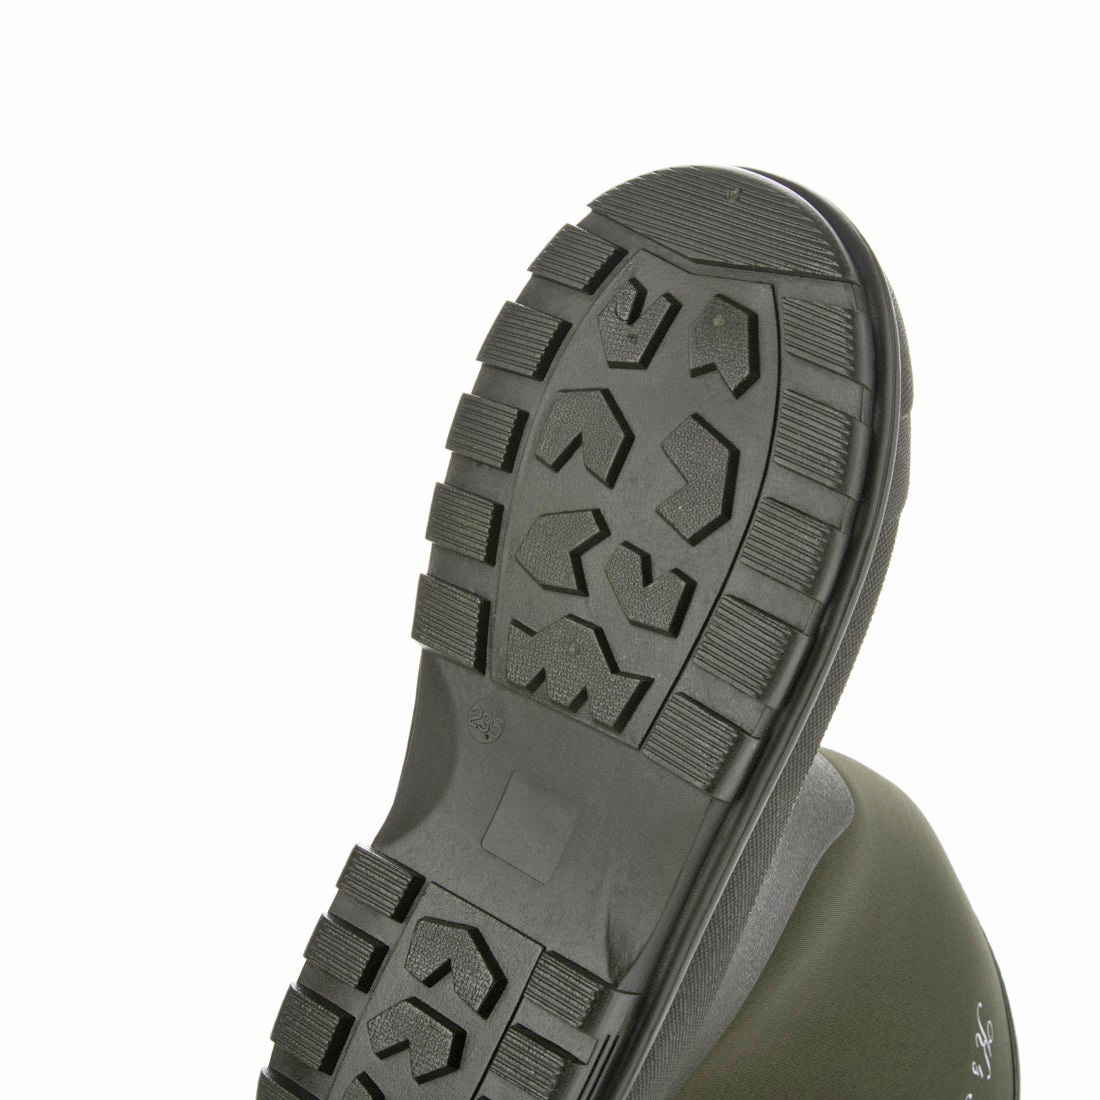  новый товар [21077-KHA-220]22.0cm Junior для резиновые сапоги / Neo pre n влагостойкая обувь, черный ro pre n материалы сапоги, дождь обувь 